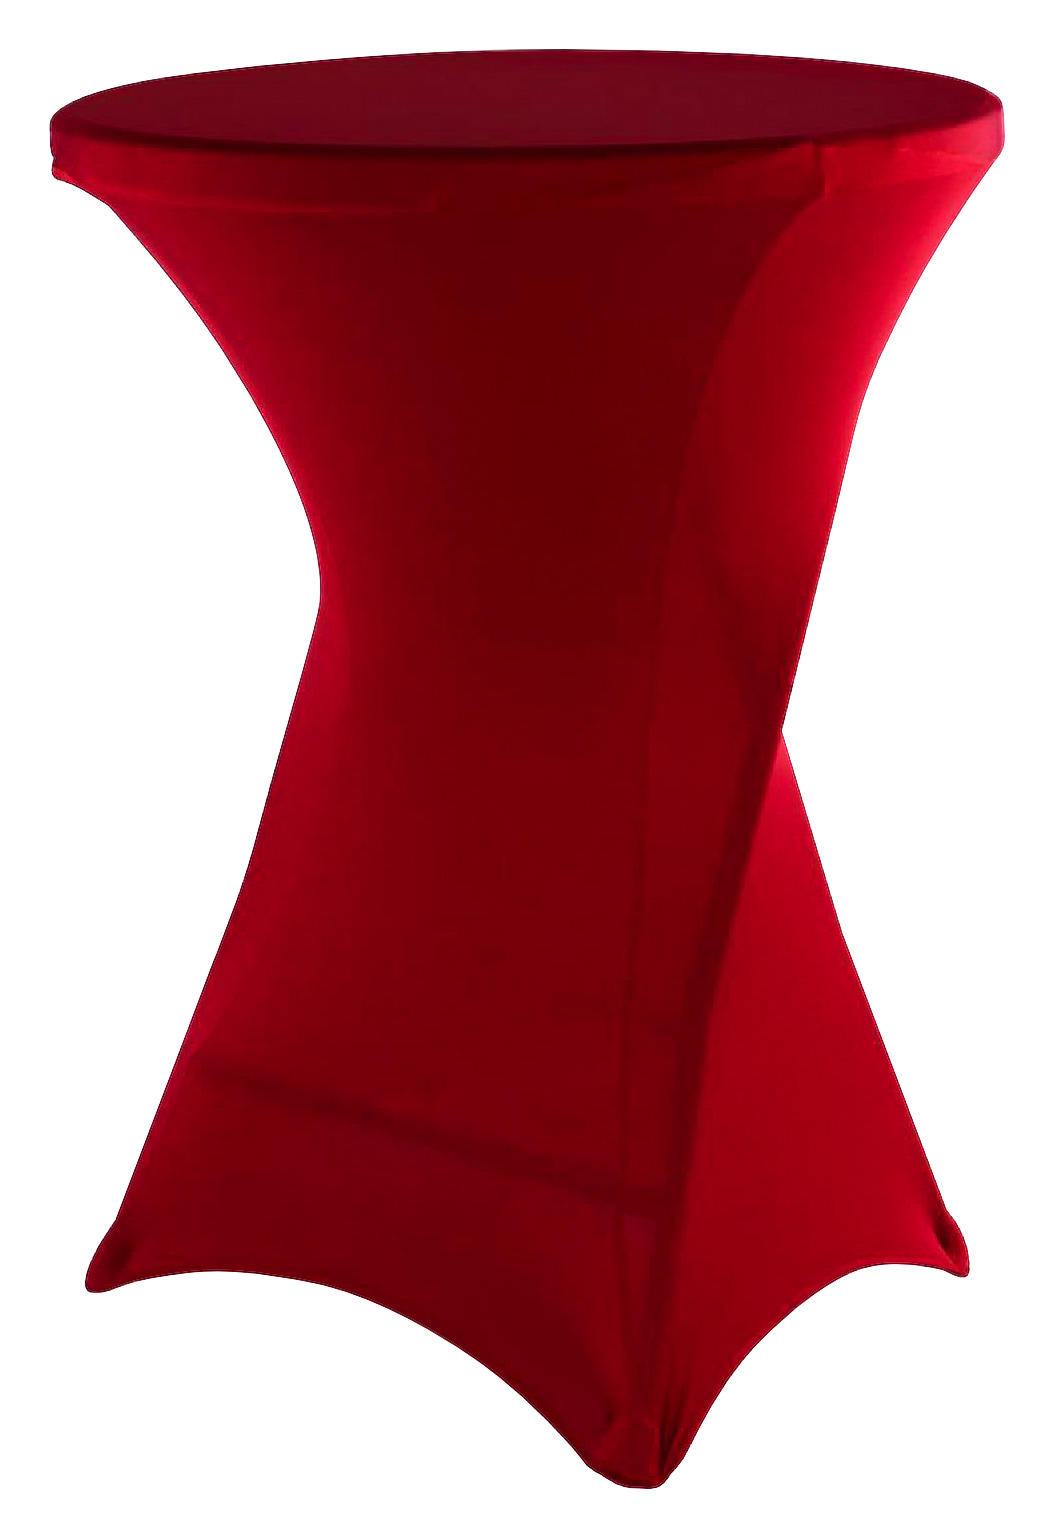 VCM Stretch-Husse für Stehtisch rot Polyester-Mischgewebe H/D: ca. 110x80 cm Stretch-Husse_für_Stehtisch - rot (80,00/110,00cm)